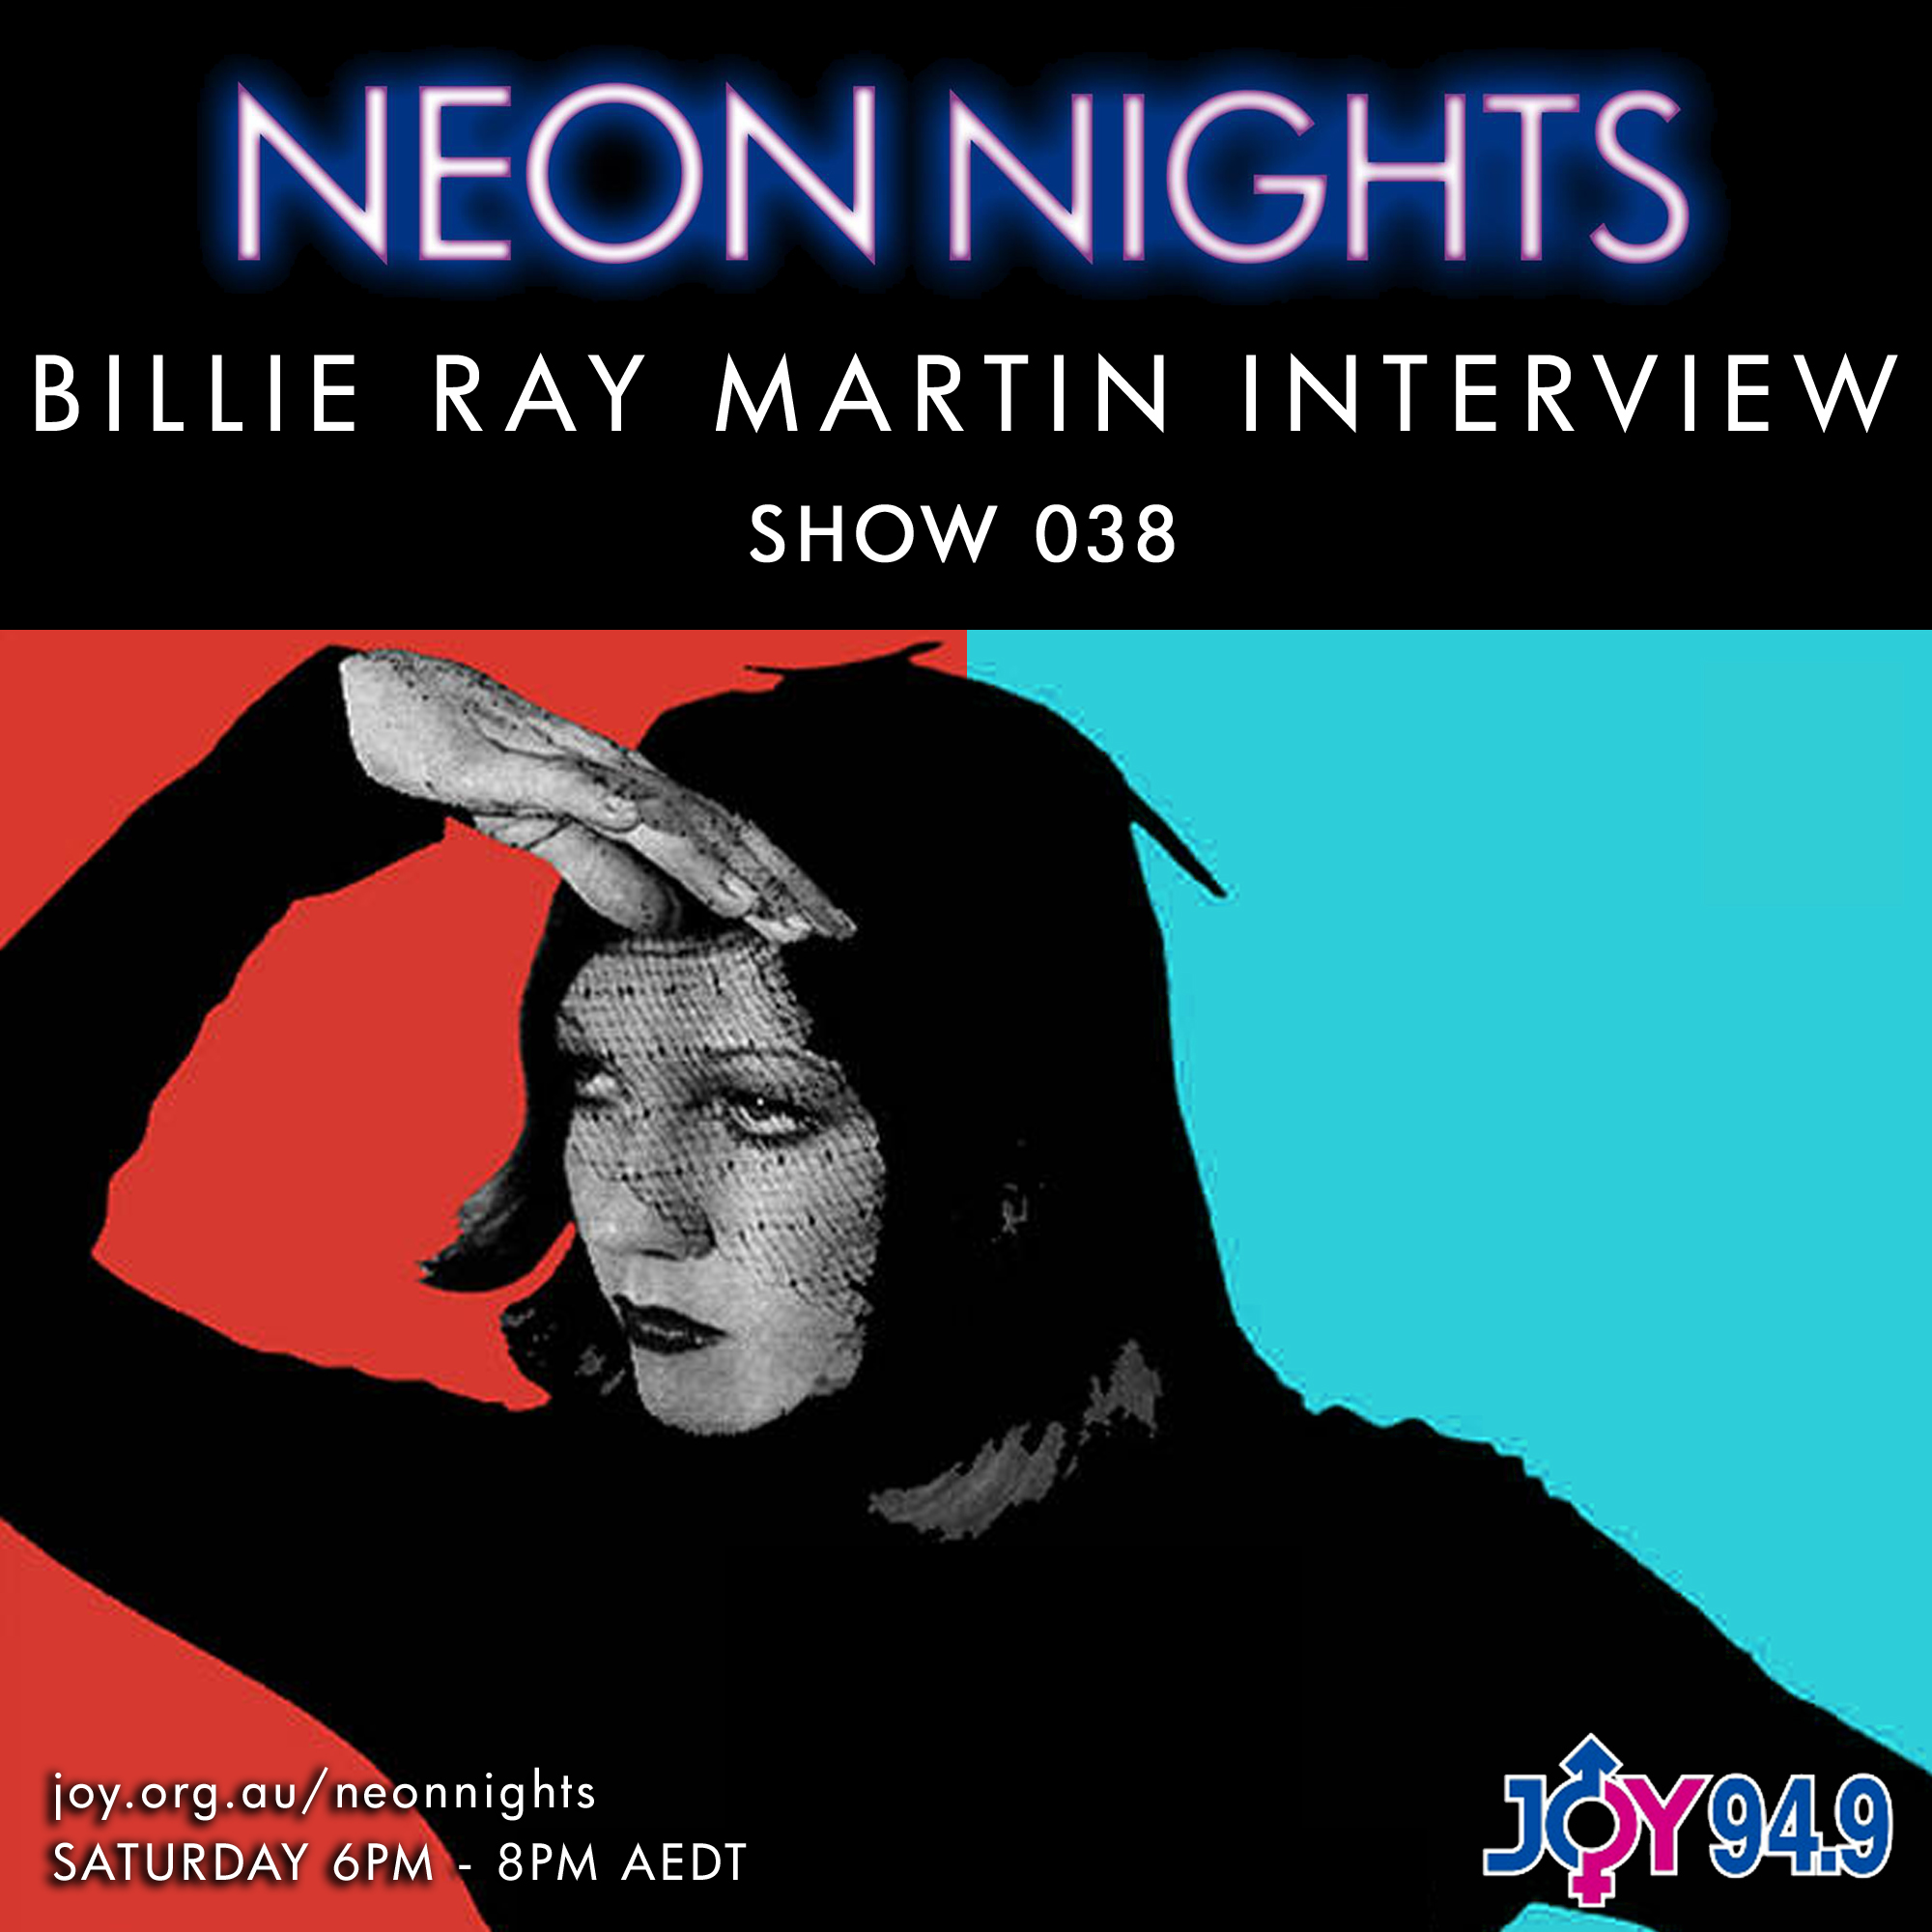 Show 038 / Billie Ray Martin Interviewed by John von Ahlen